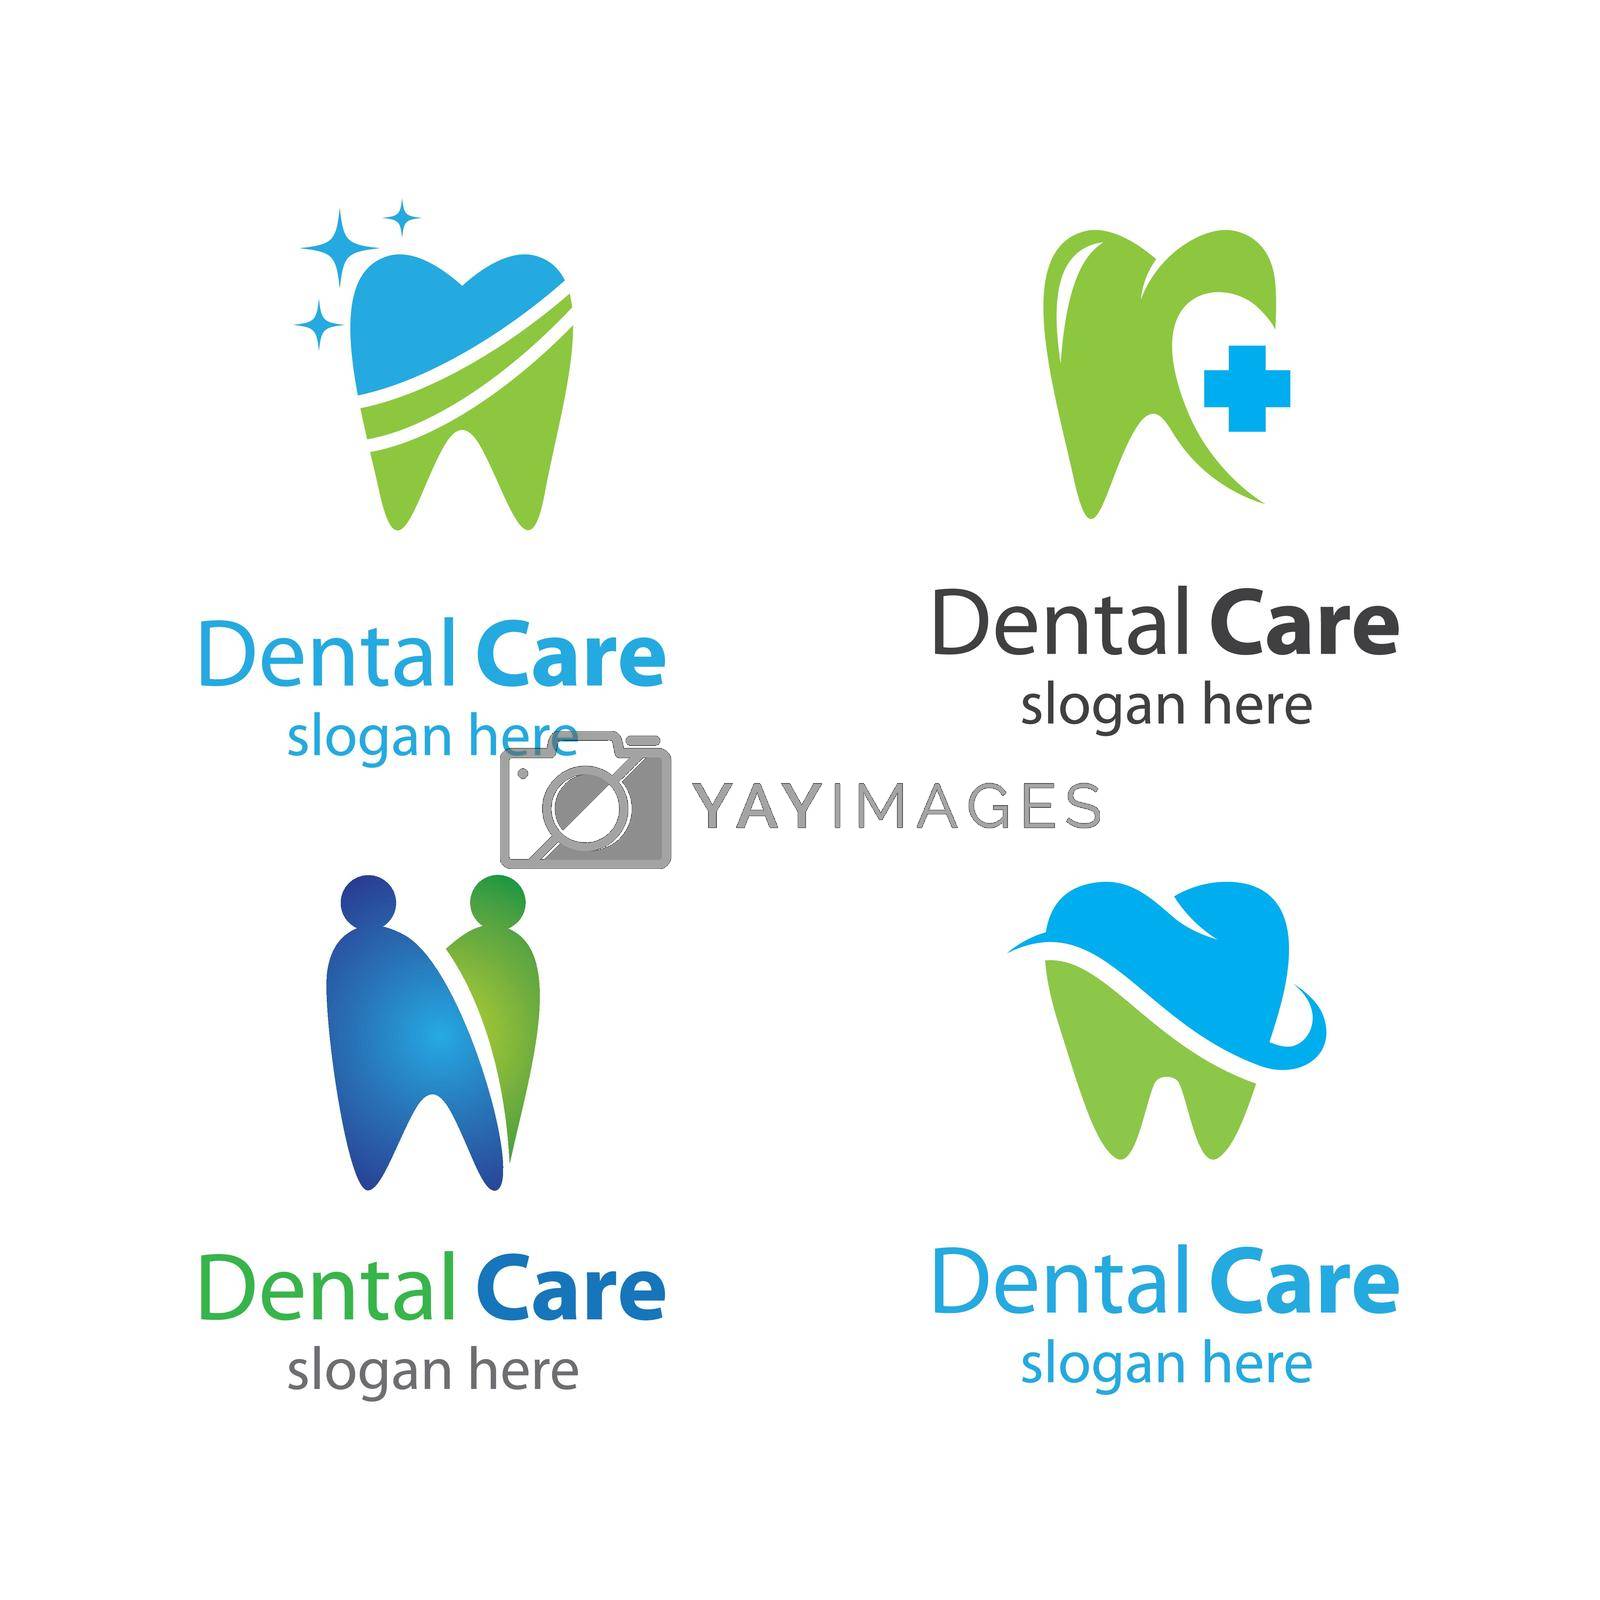 Dental care logo images illustration design